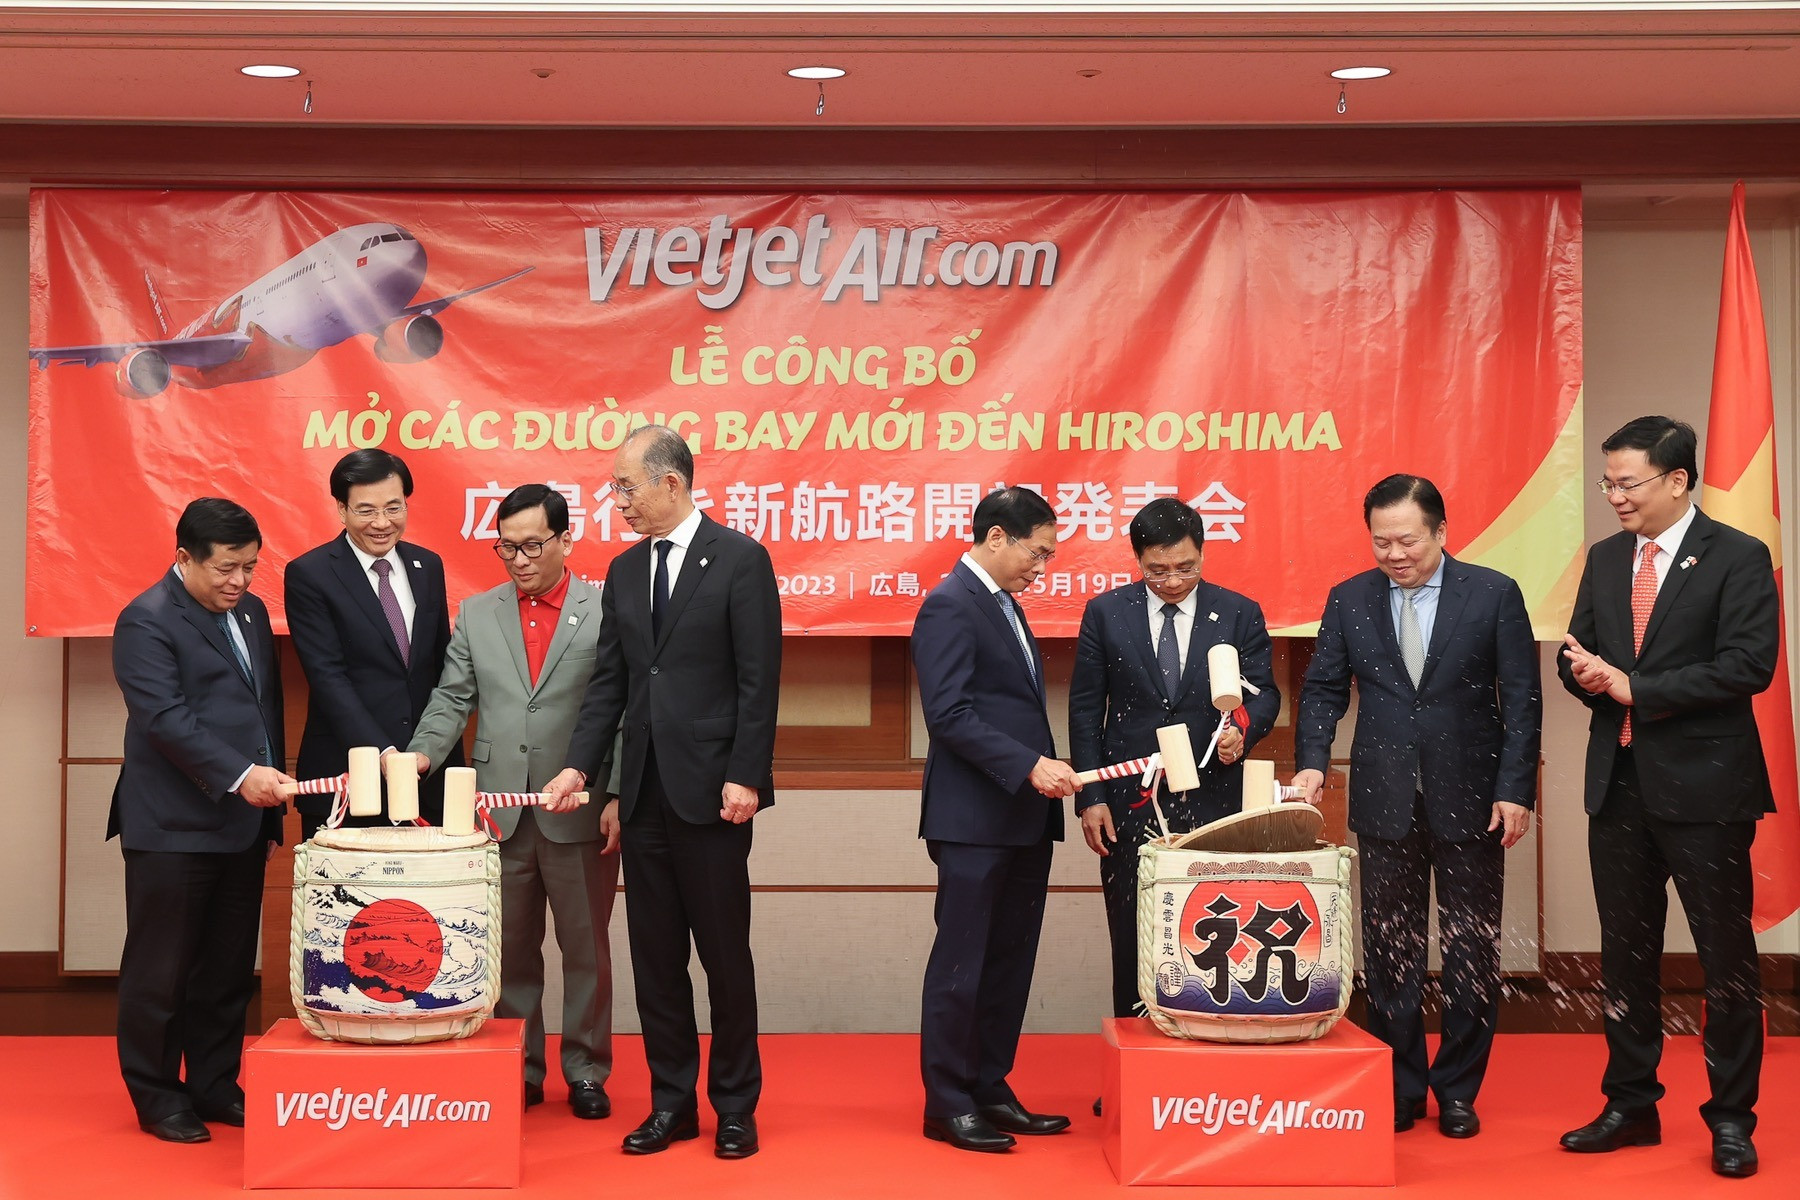 Vietjet công bố đường bay thẳng đầu tiên từ Việt Nam đến Hiroshima, Nhật Bản